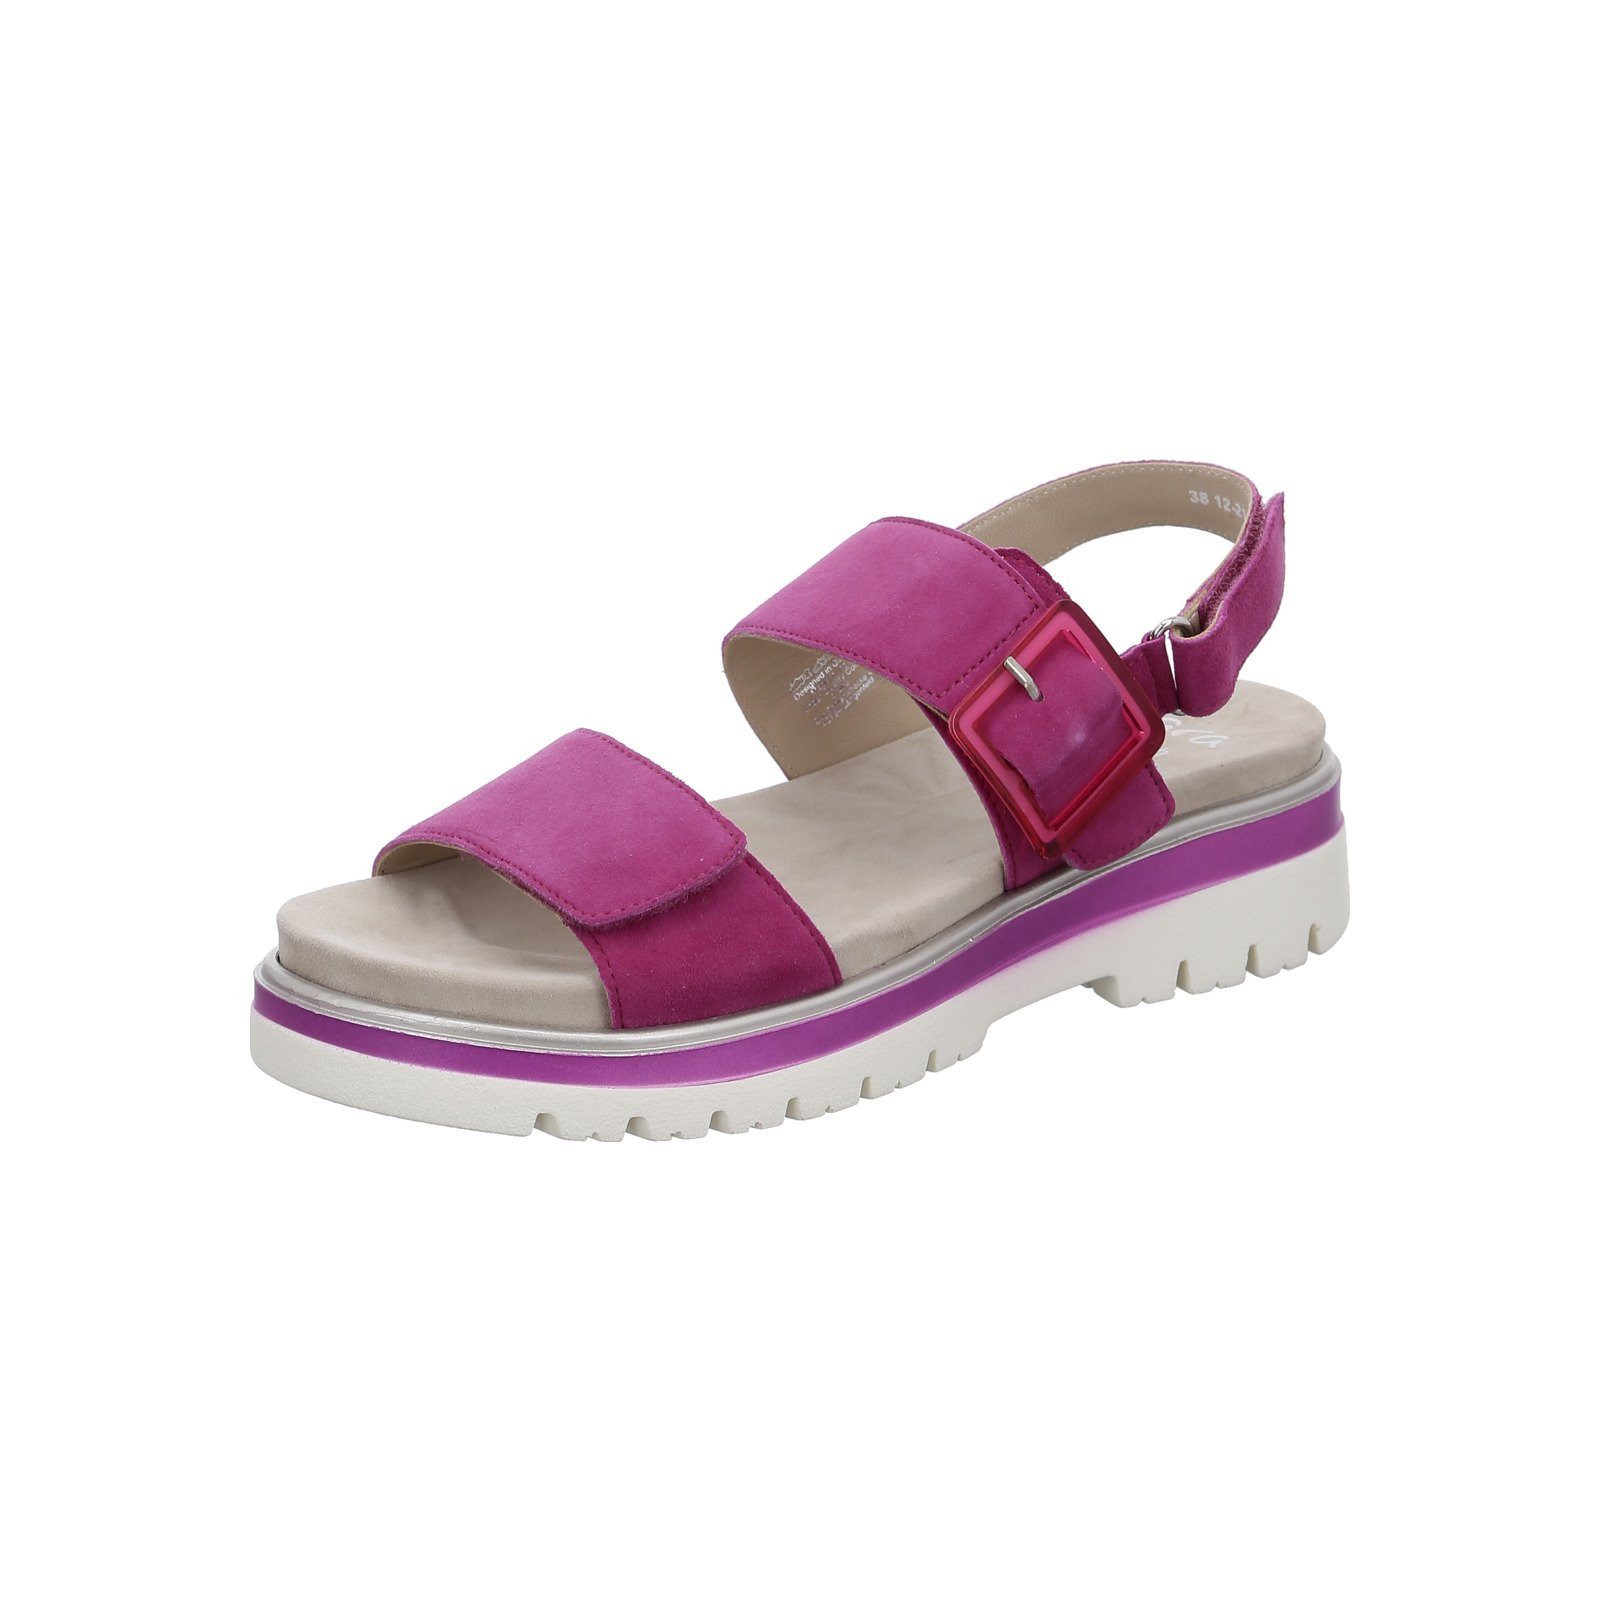 Ara Malaga - Damen Schuhe Sandalette rosa